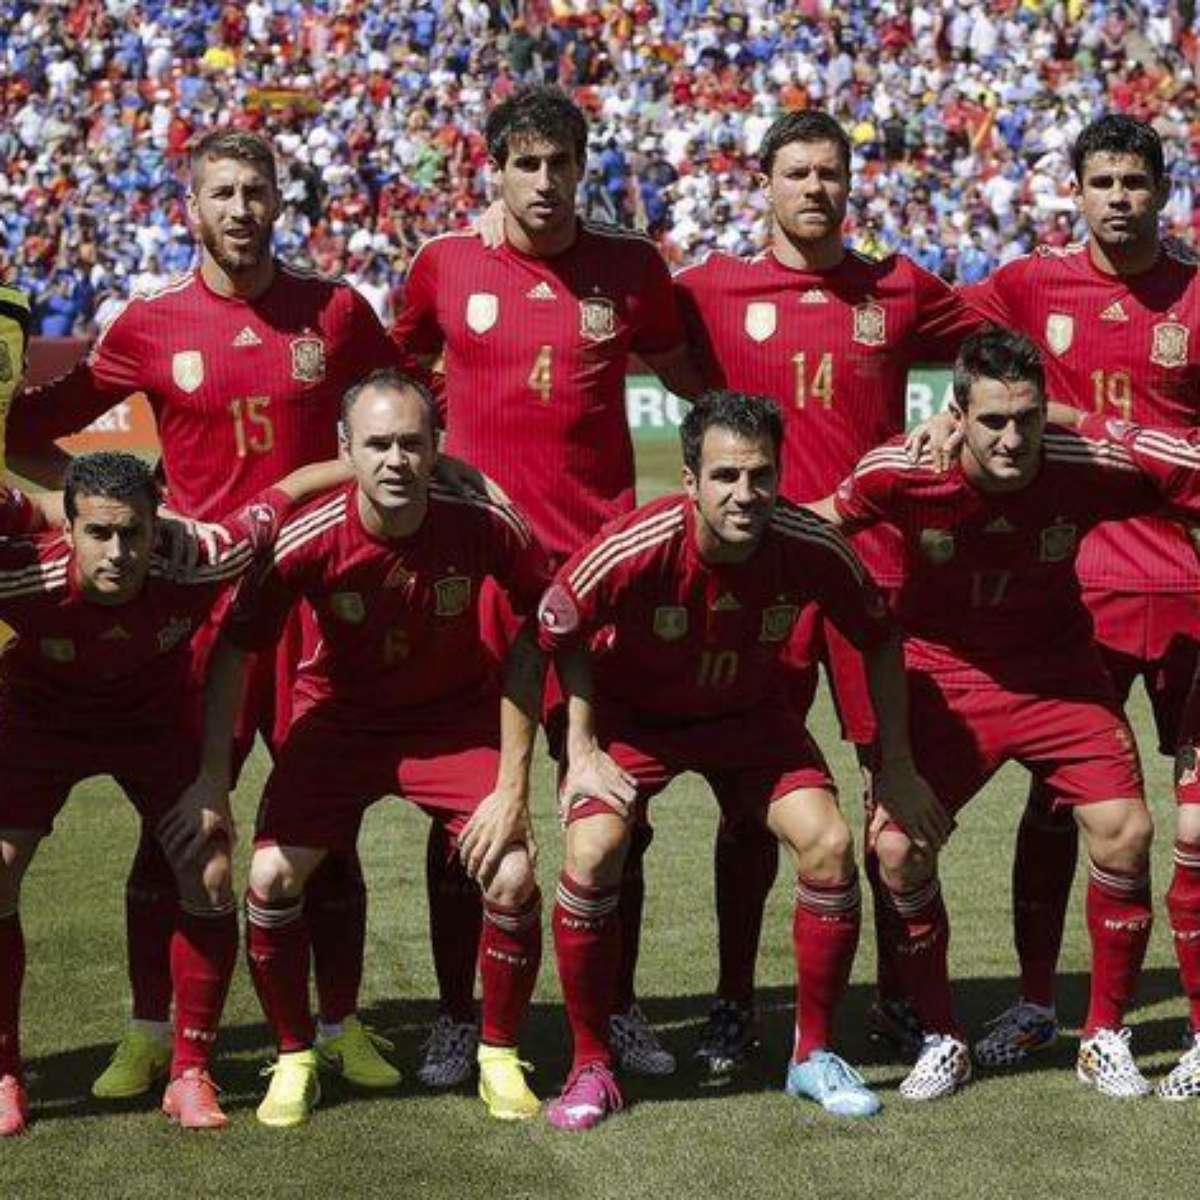 Espanha campeã em 2010 - La Fúria é Roja, parte 8 - 1 x 0 Portugal